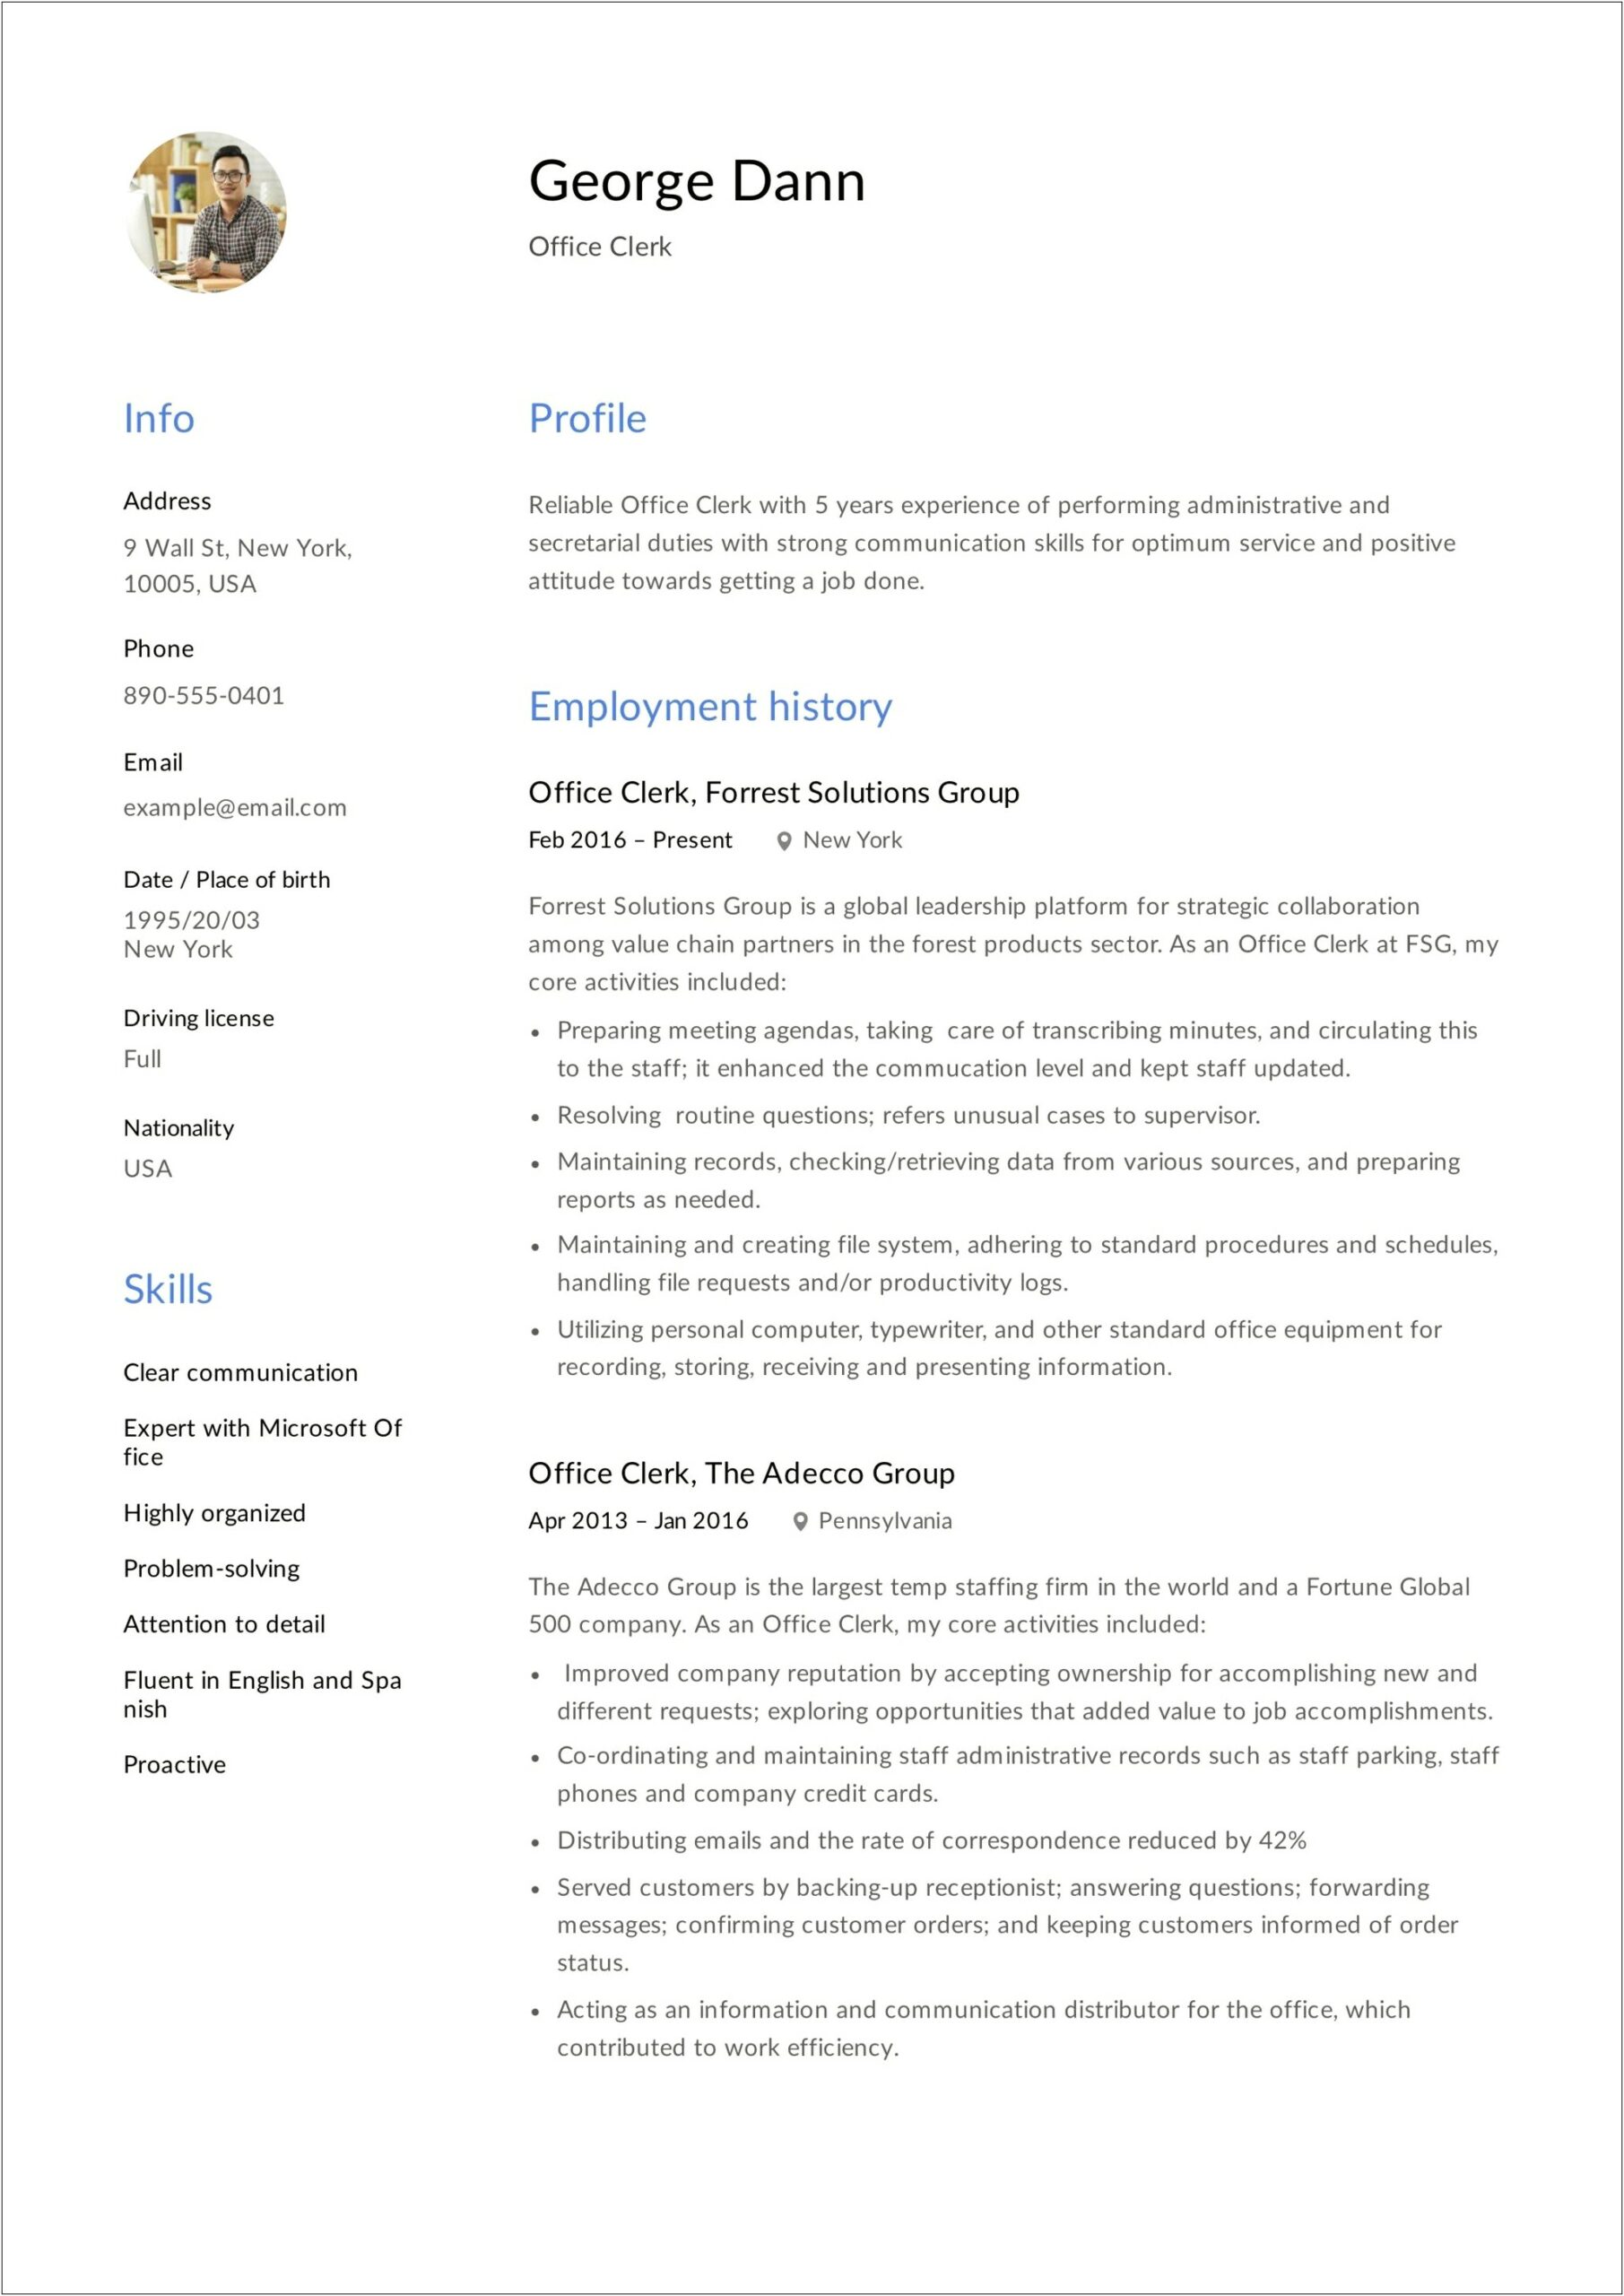 Office Clerk Job Description For Resume